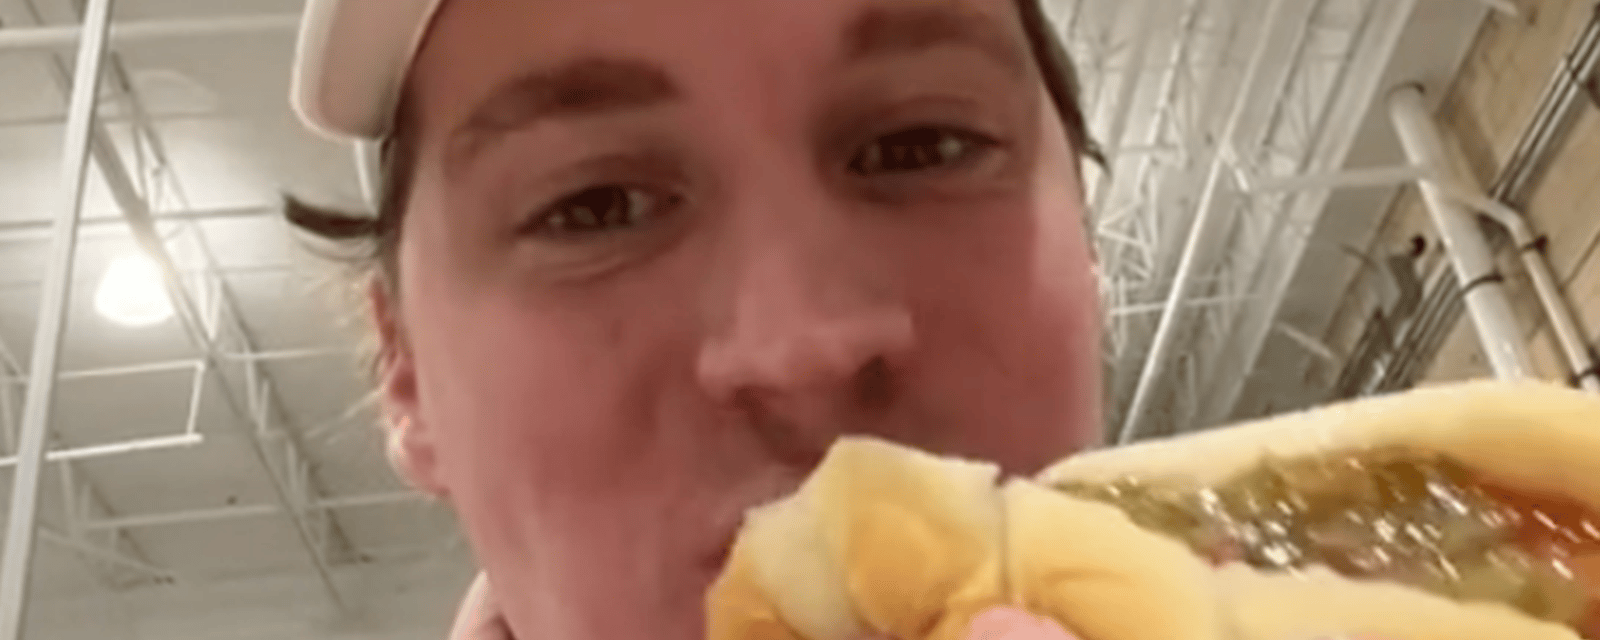 Un internaute a mangé que des hot-dogs de chez Costco pendant une semaine et il affirme avoir perdu du poids